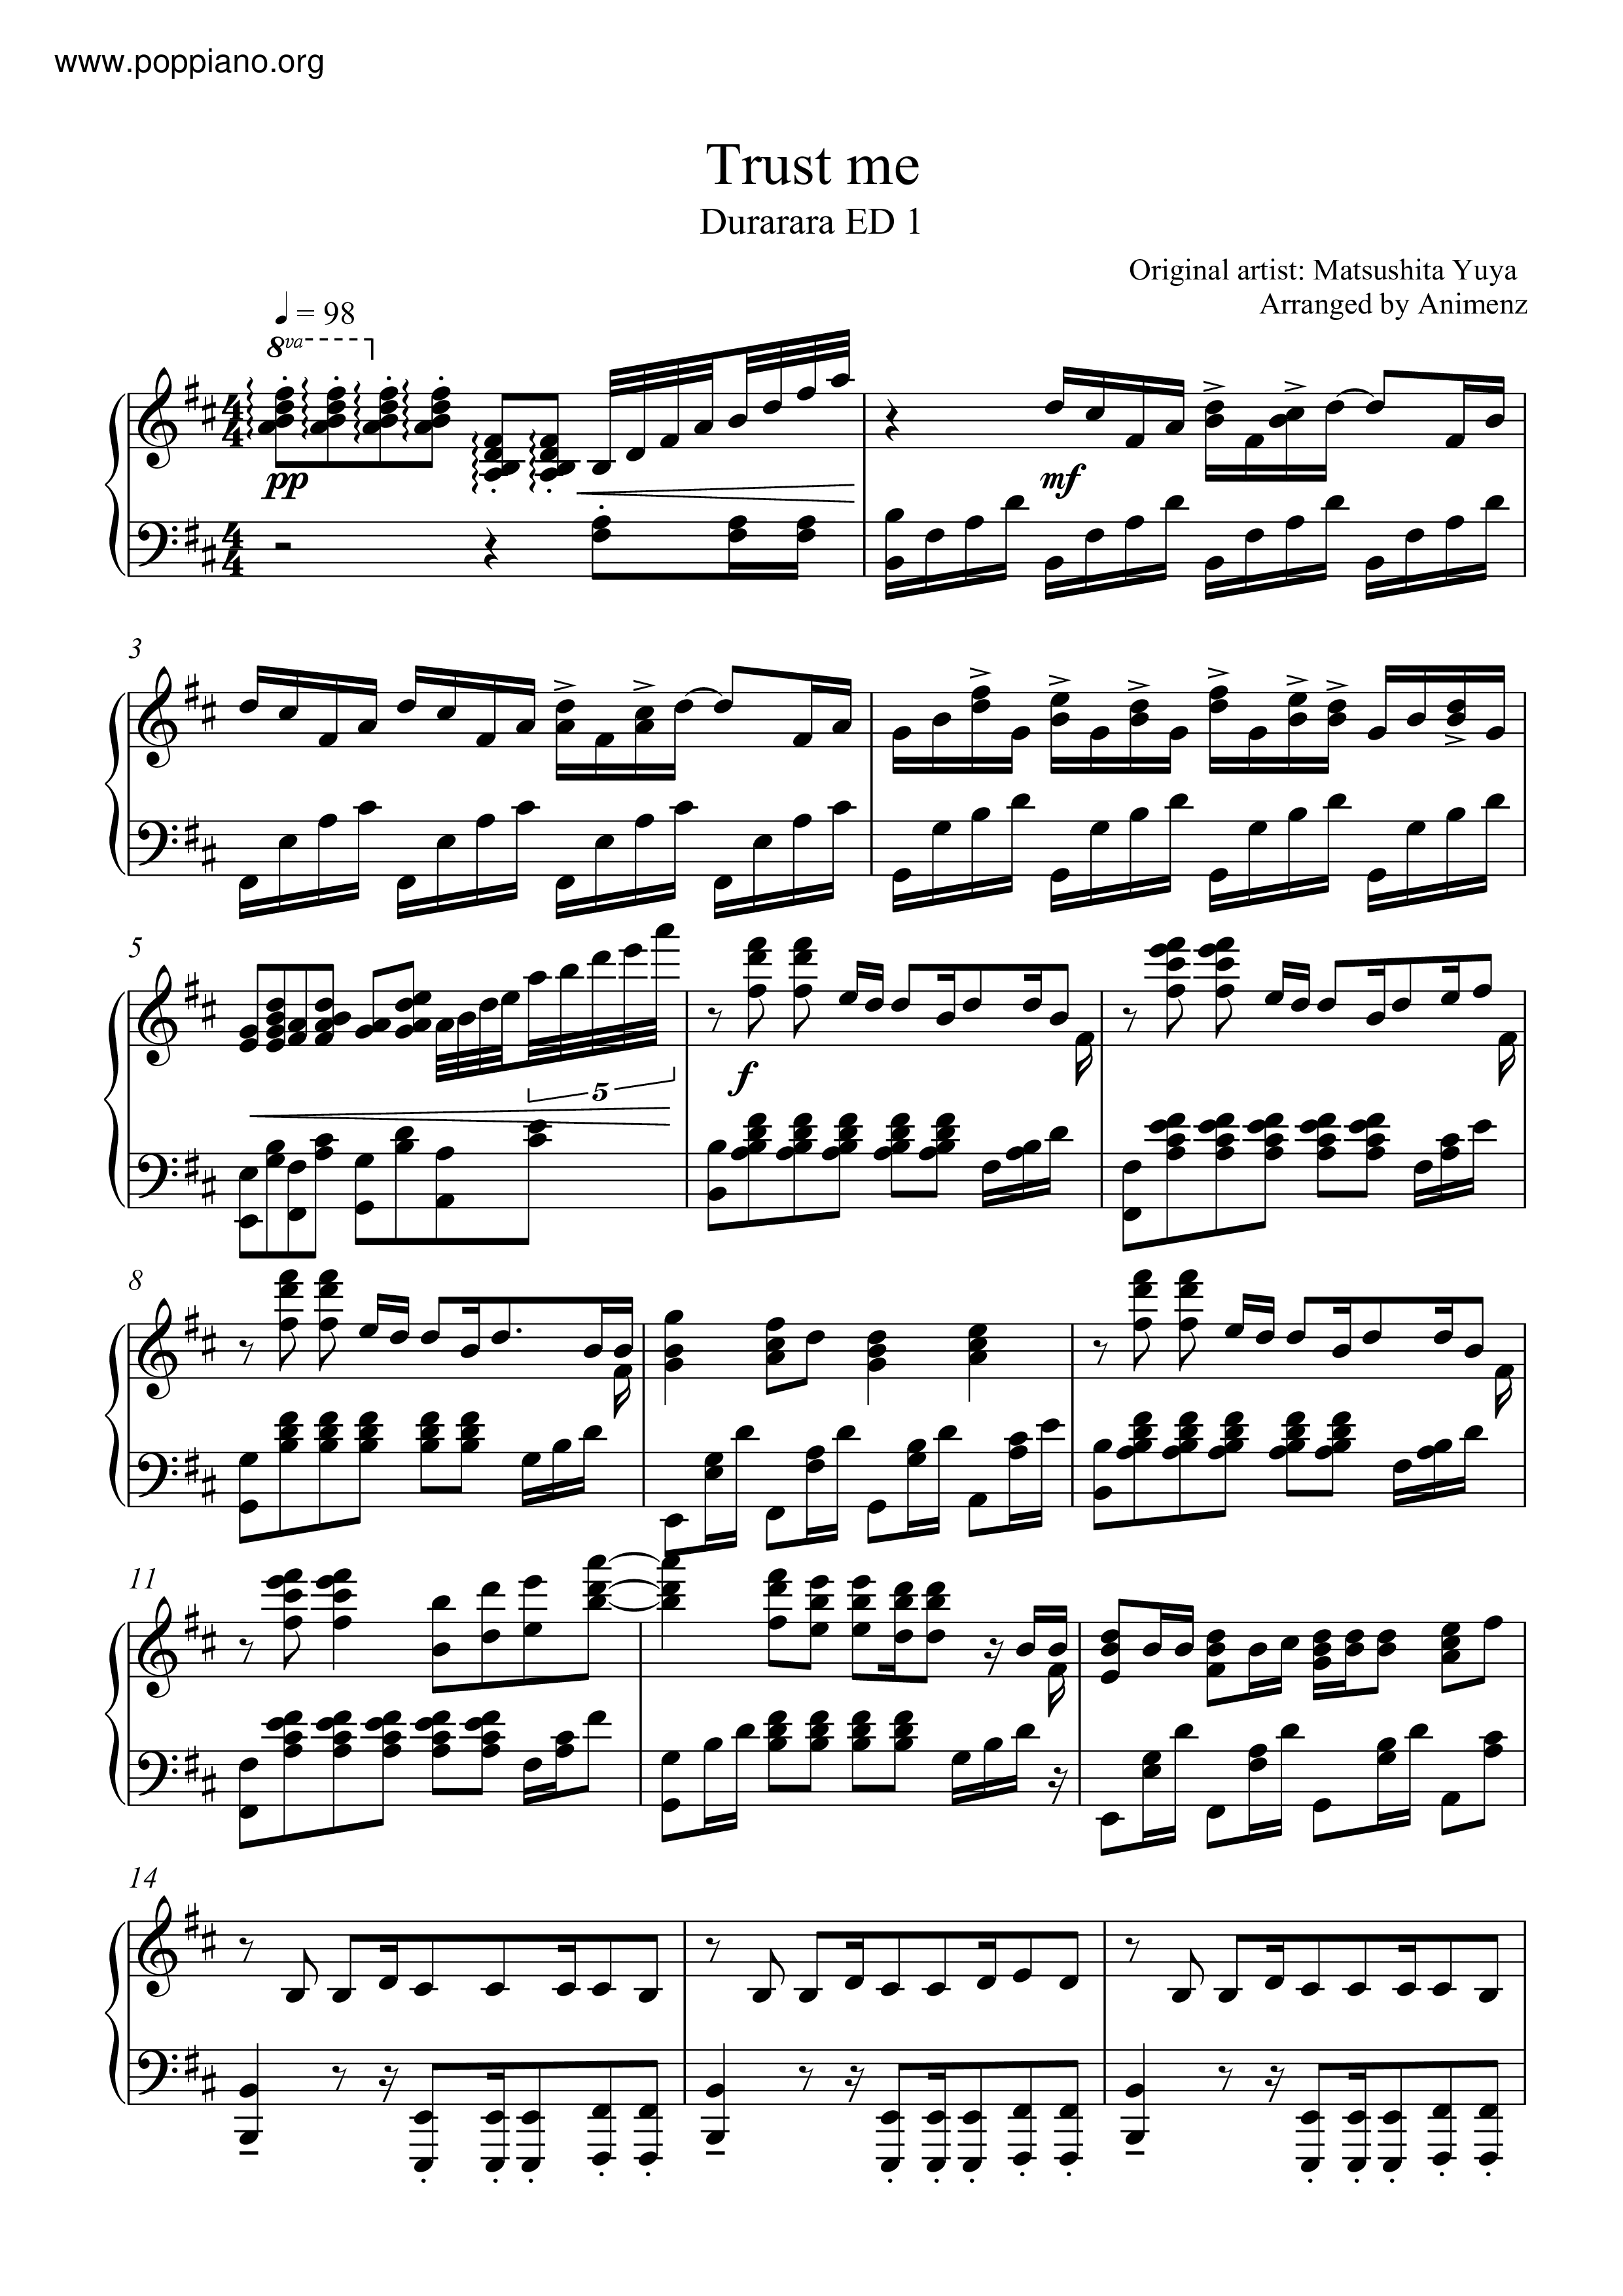 ☆ 松下优也-Durarara - Trust Me 琴谱/五线谱pdf-香港流行钢琴协会琴 